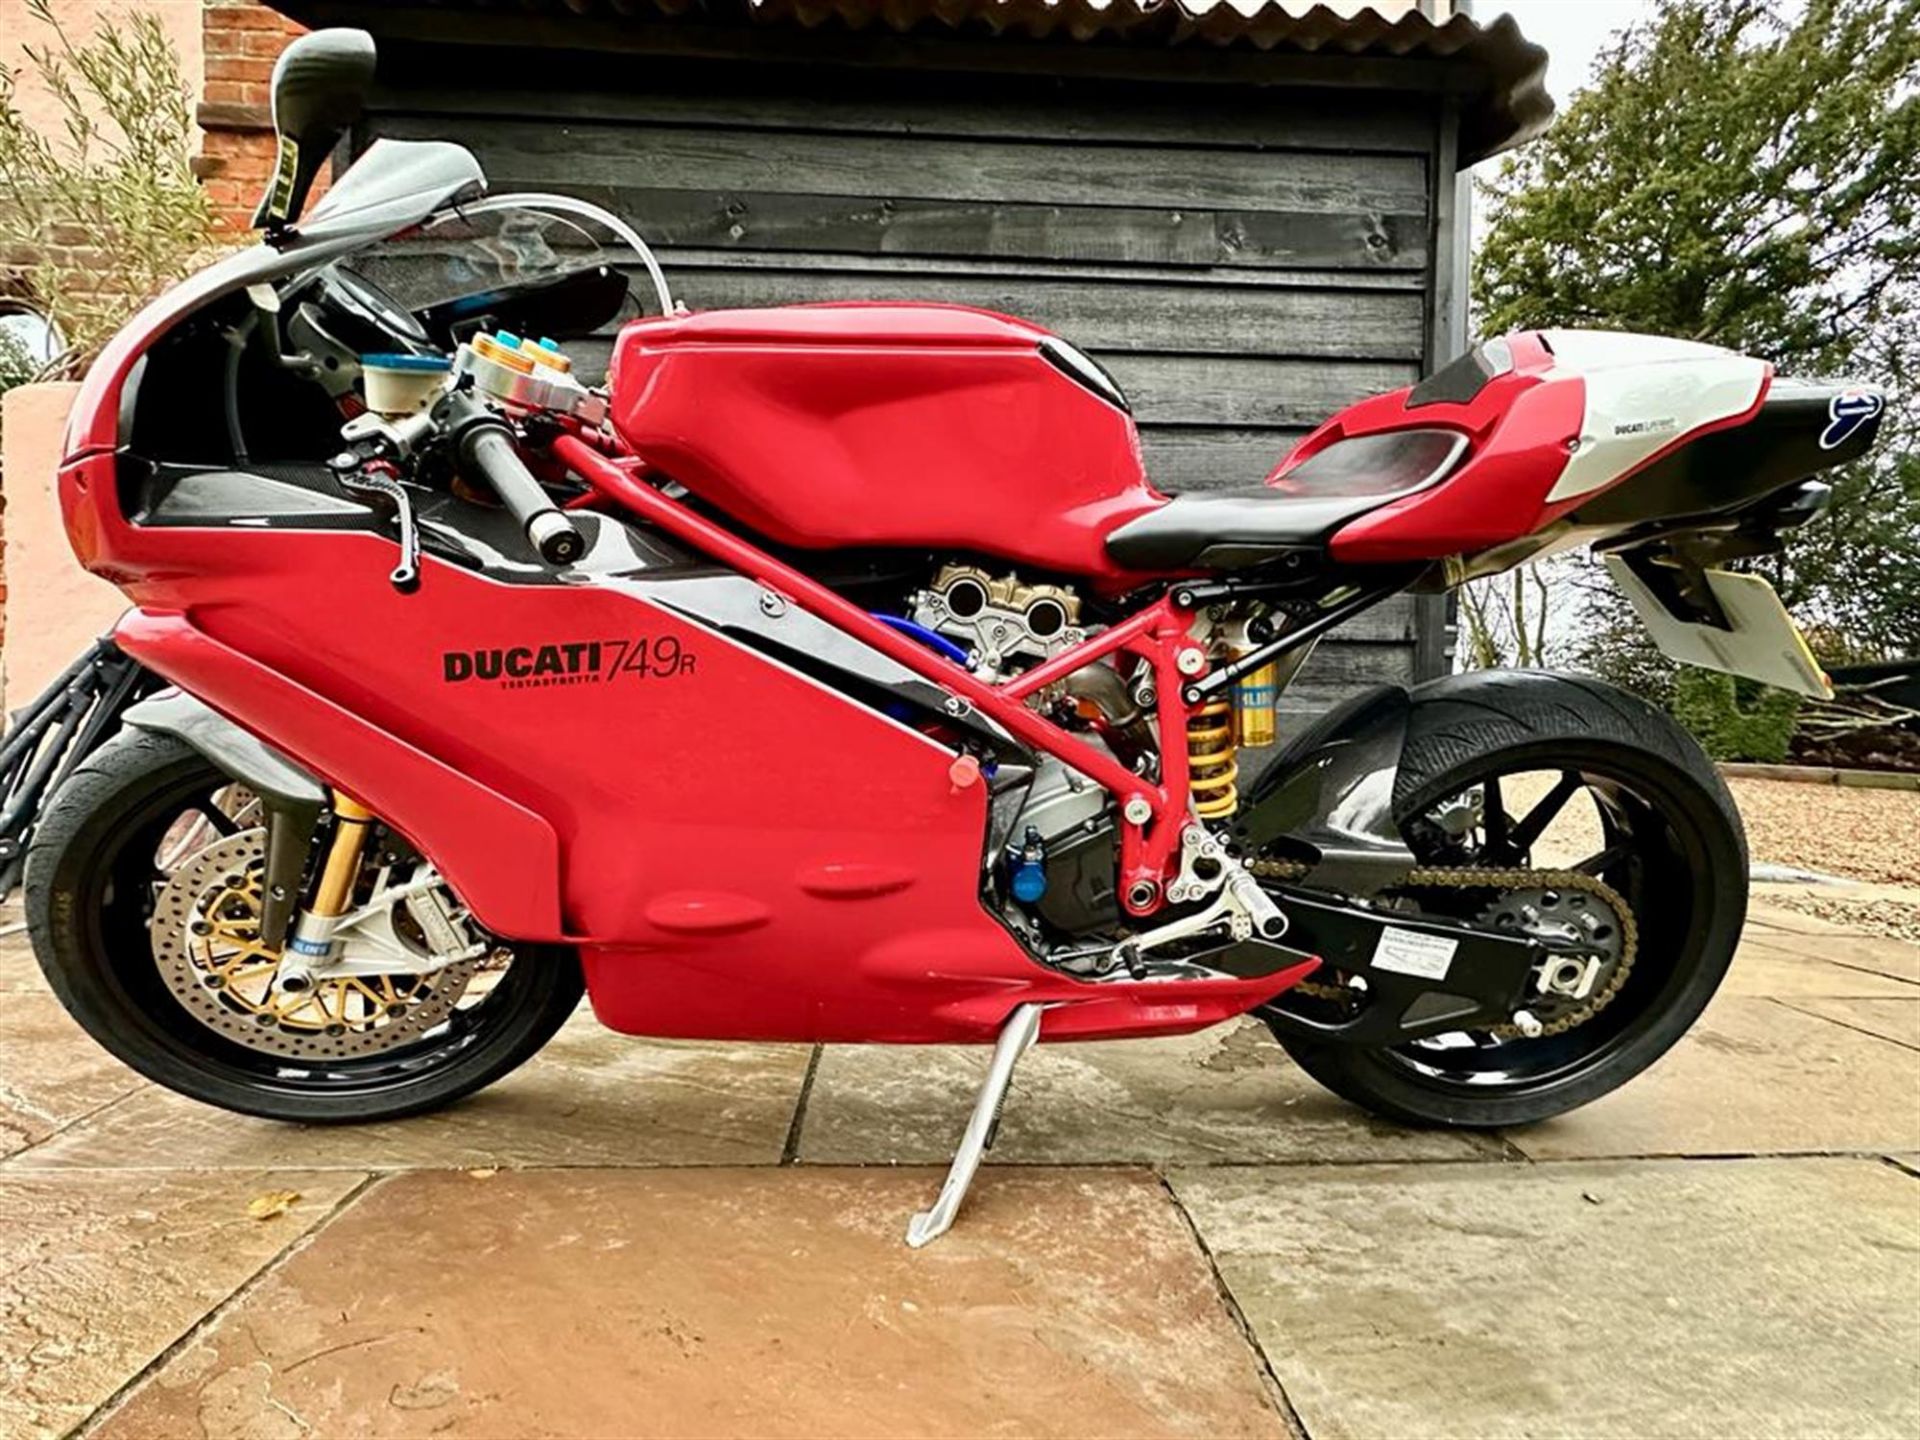 2004 Ducati 749R 749cc - Image 5 of 10